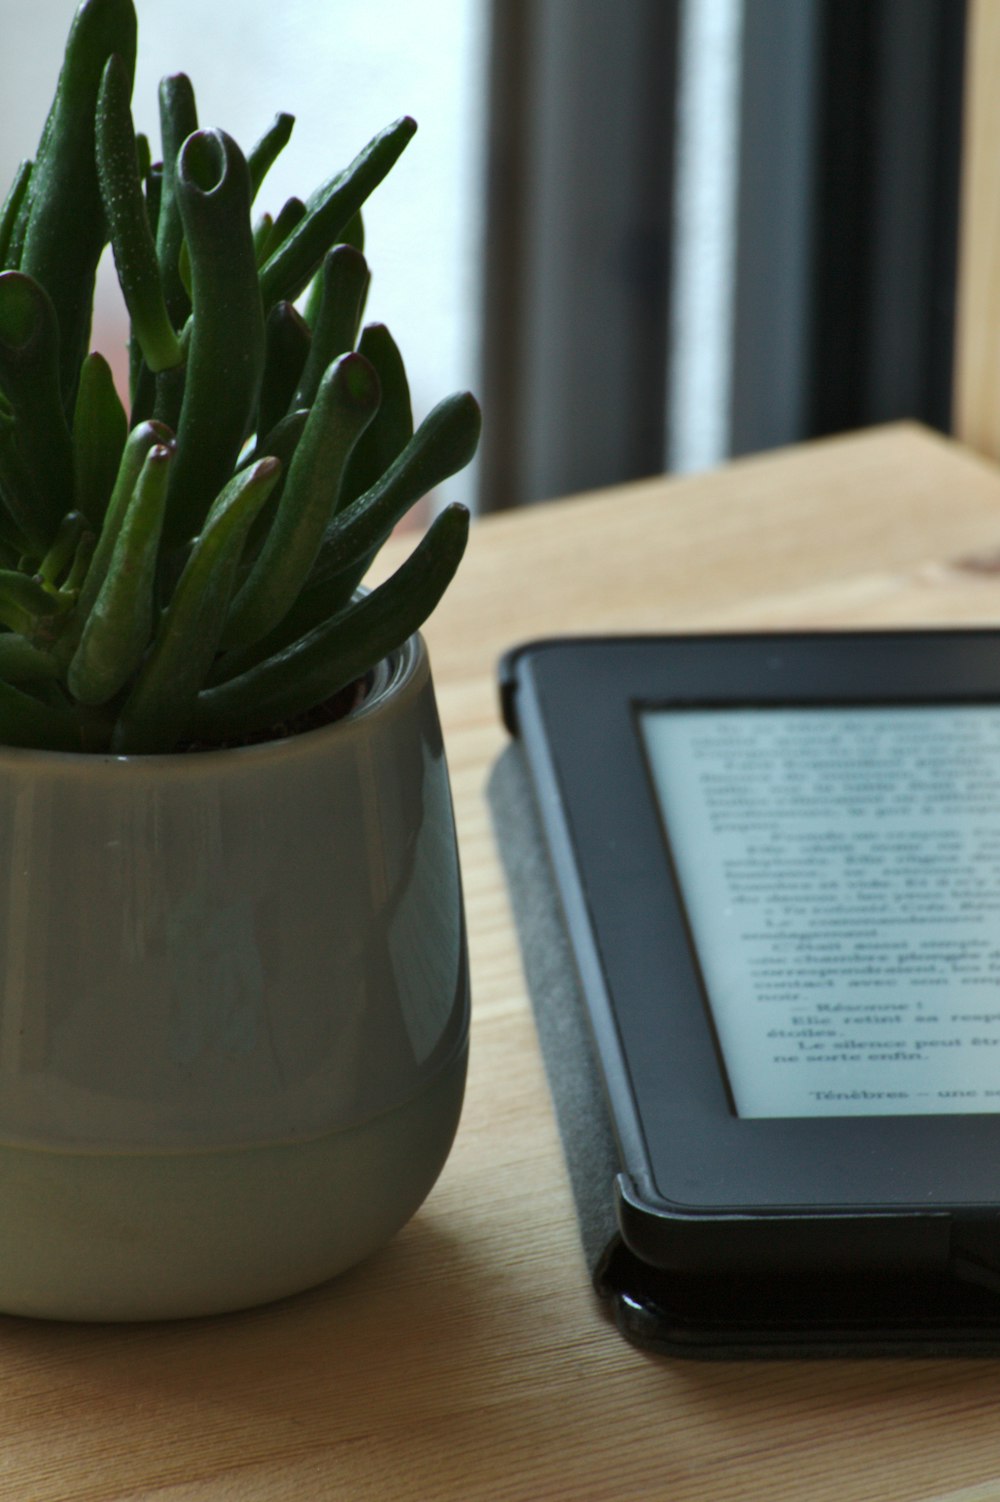 Lecteur de livre électronique noir à côté de la plante de cactus vert